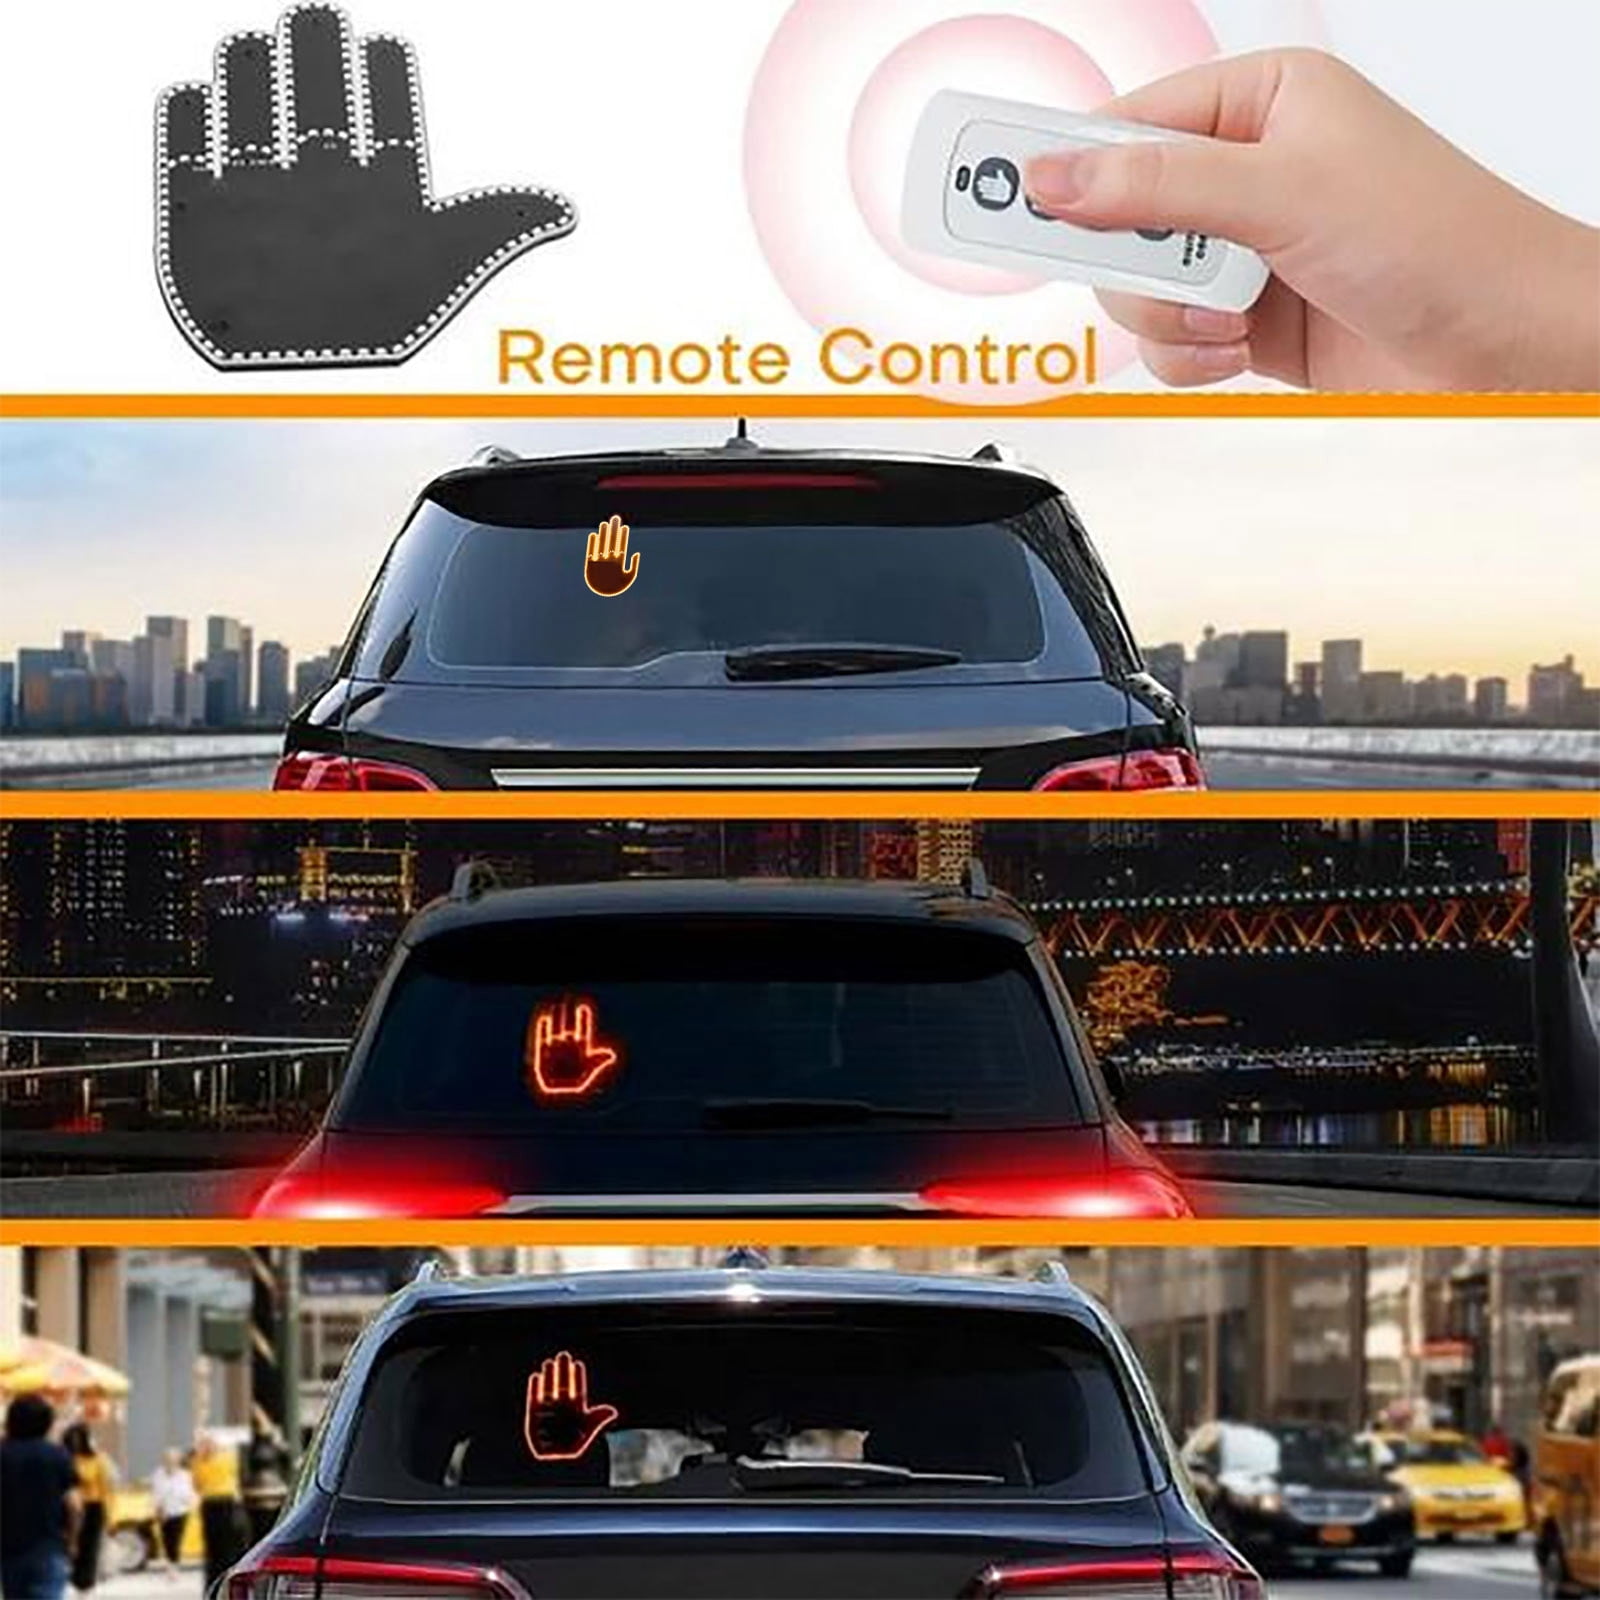  Finger Car Light with Remote, Funny Gesture Finger